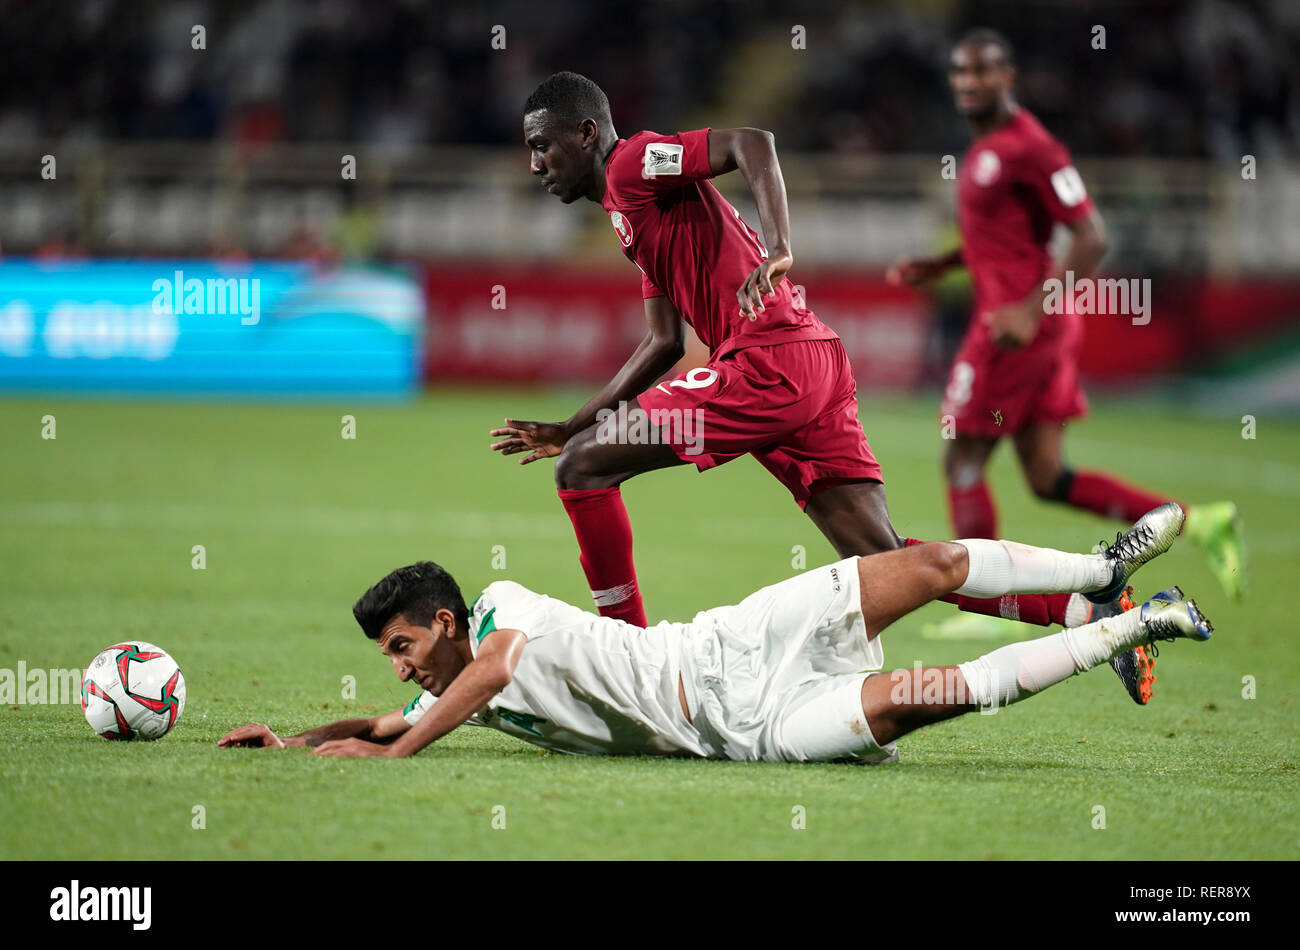 22 janvier 2019 : Almoez Ali du Qatar fouling Amjad Attwan de l'Iraq au cours de Qatar v Iraq au Zayed Sports City Stadium à Abu Dhabi, Émirats arabes unis, AFC Asian Cup, championnat de football d'Asie. Ulrik Pedersen/CSM. Banque D'Images